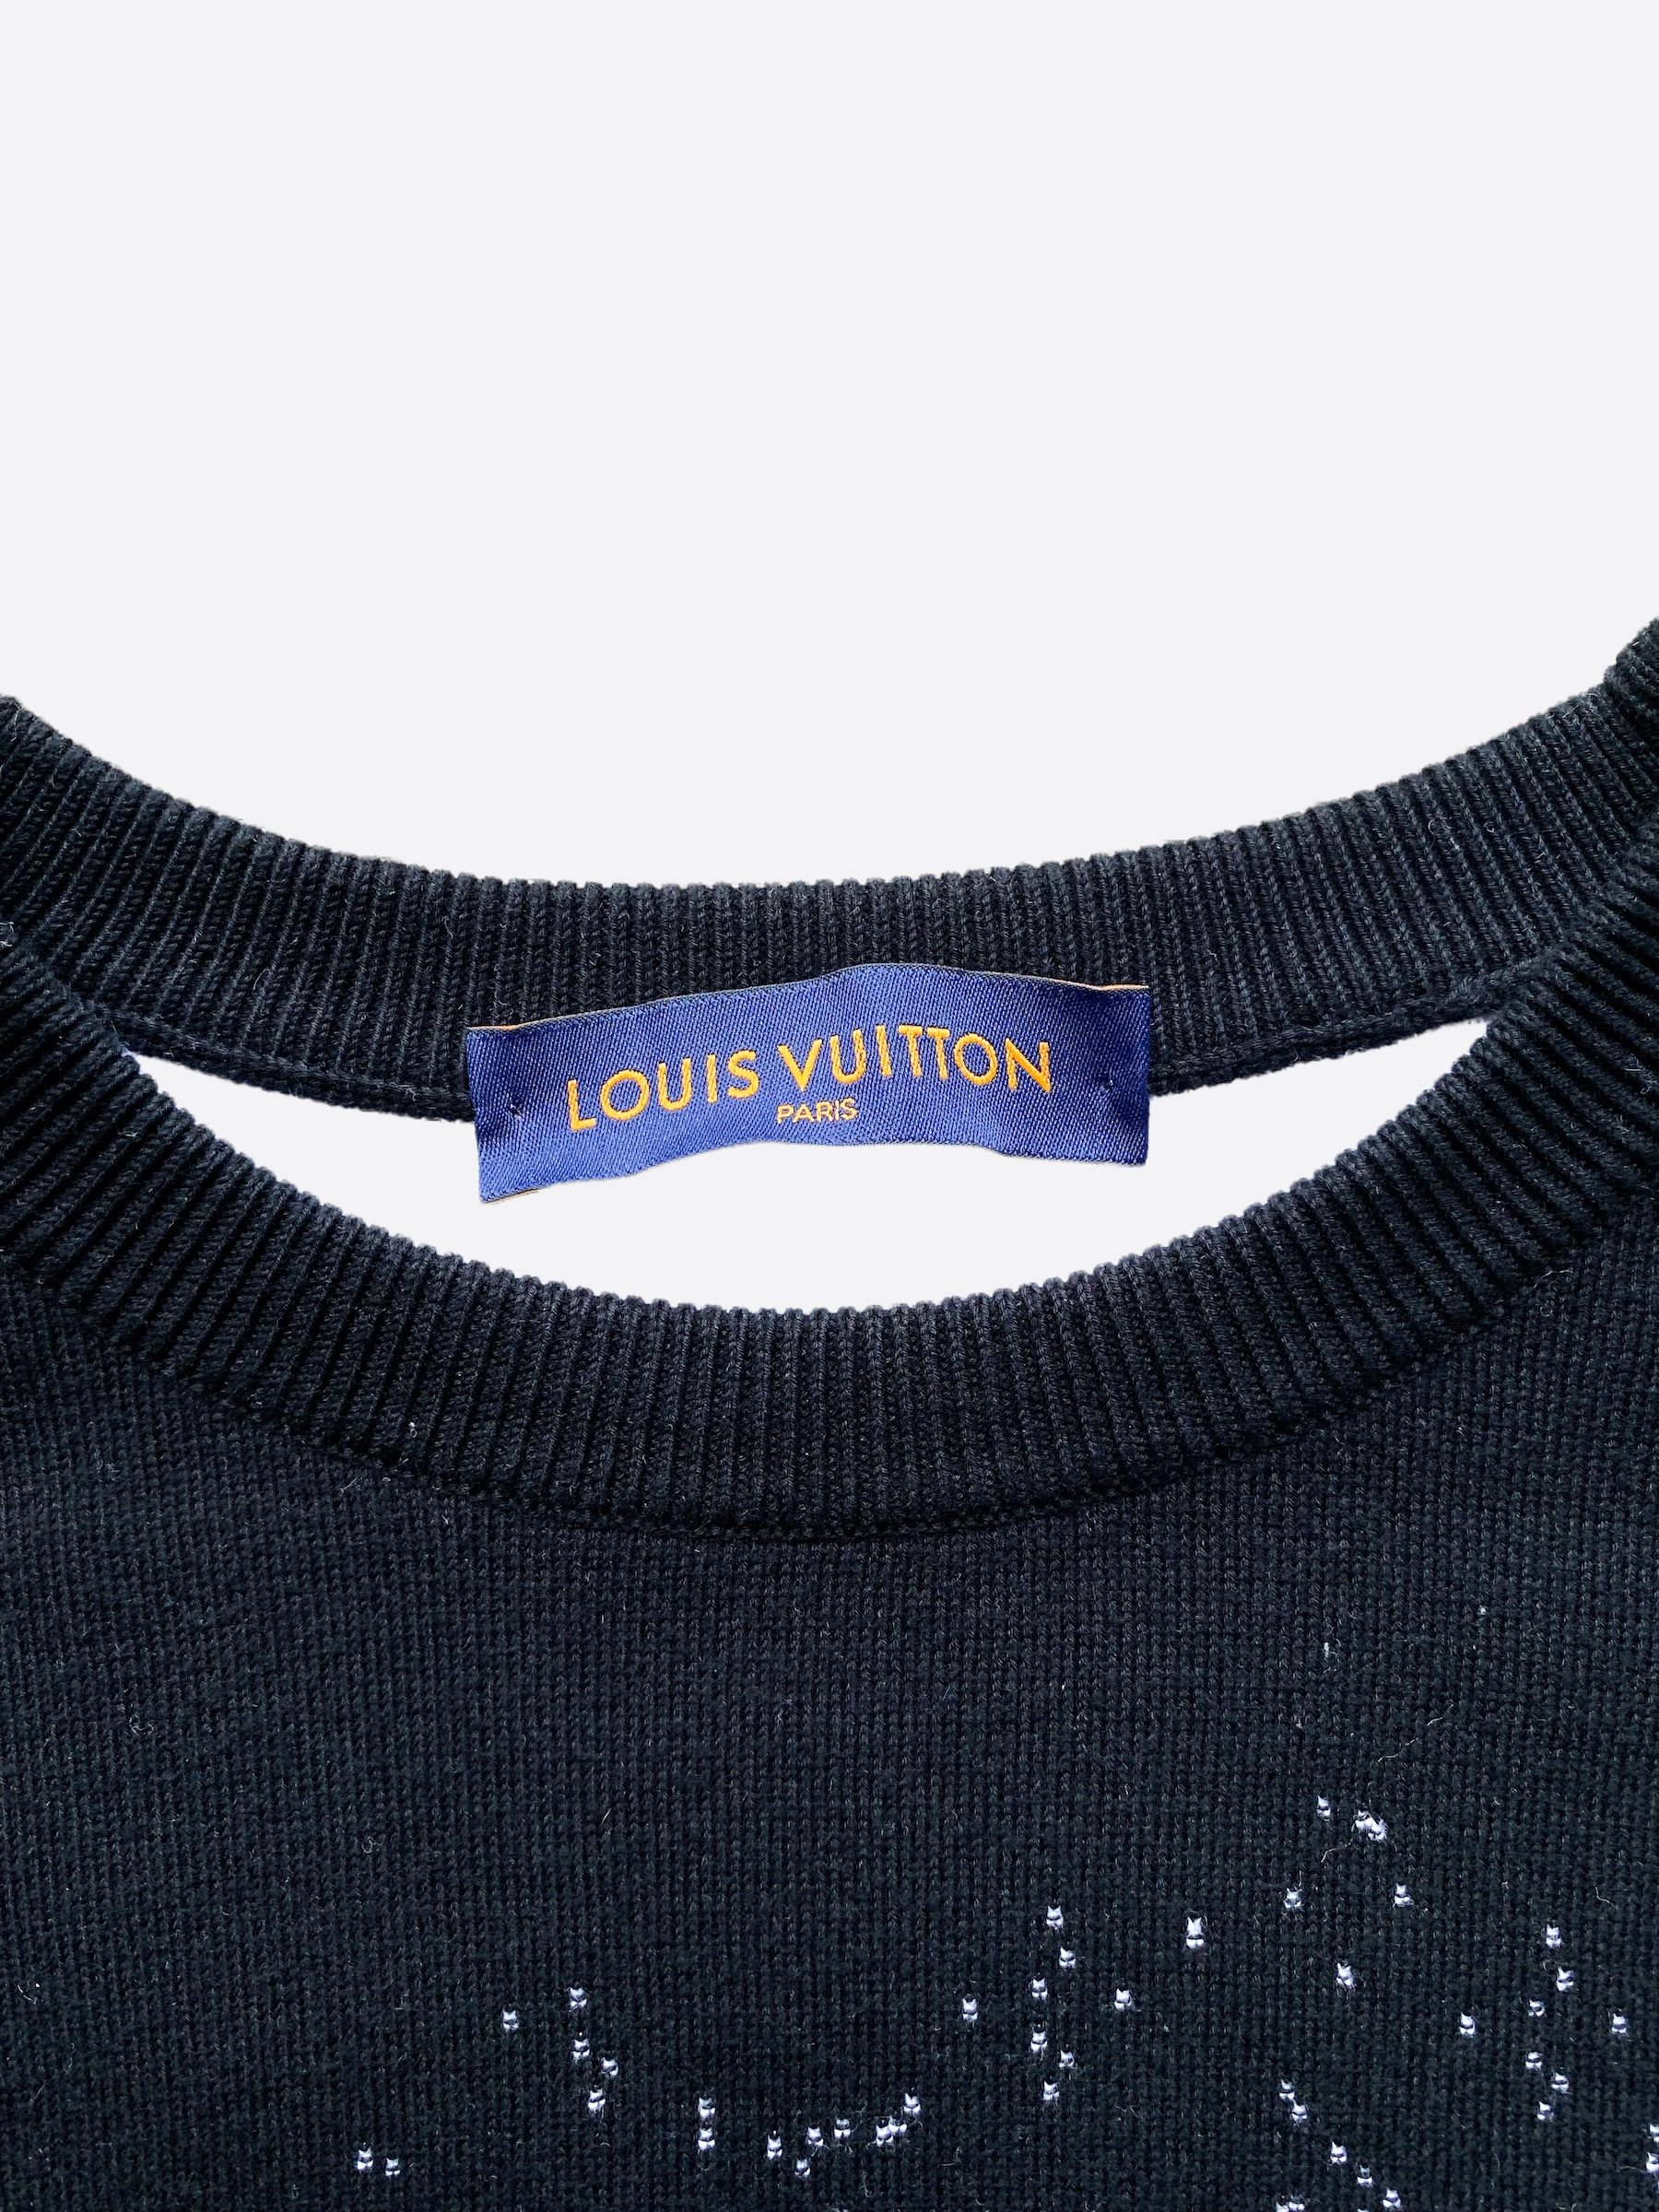 Products By Louis Vuitton: Gradient Monogram Crewneck